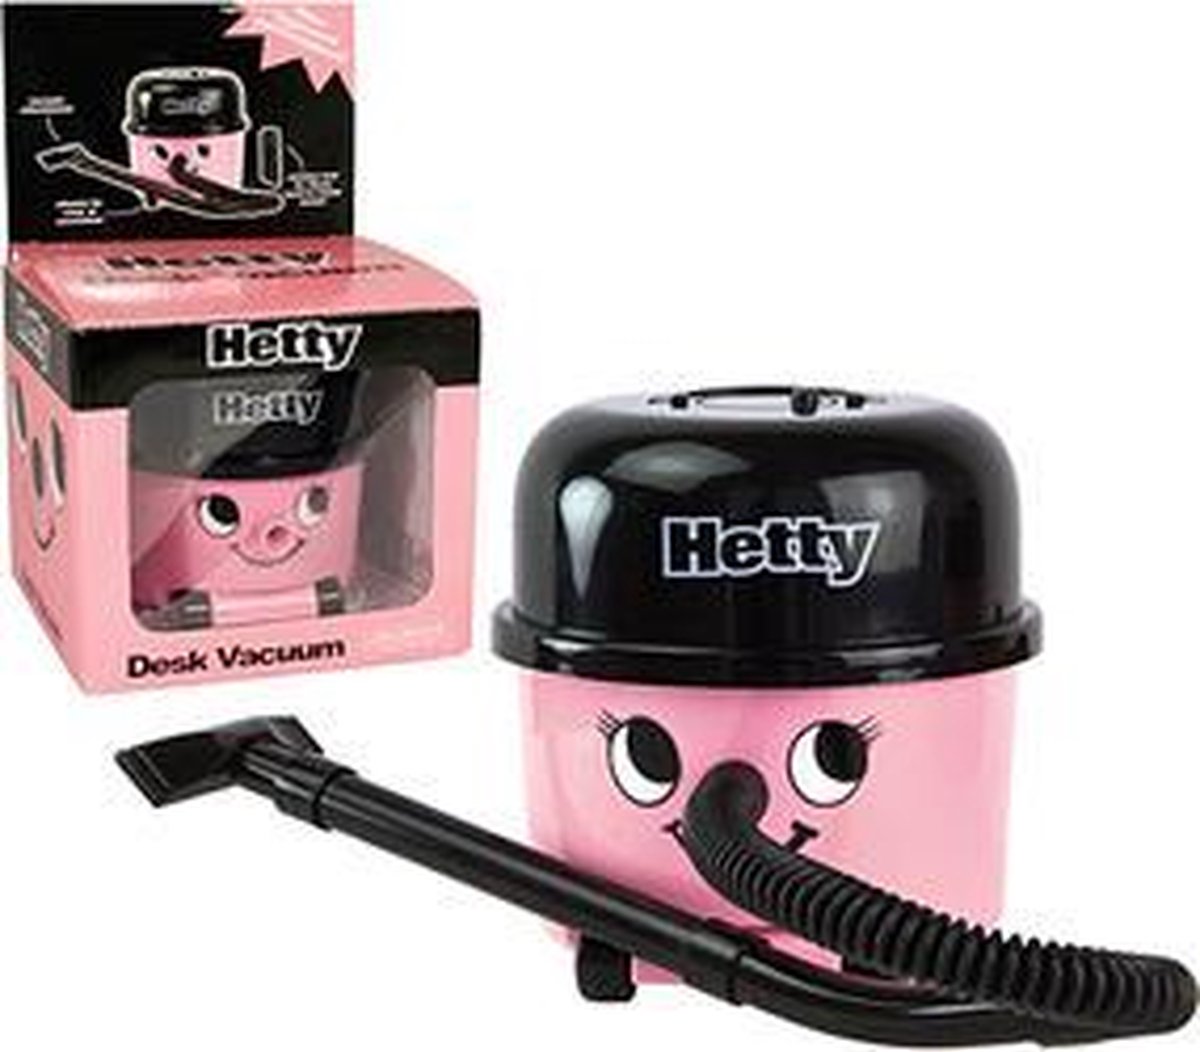 Hetty Desk Vacuum | bol.com